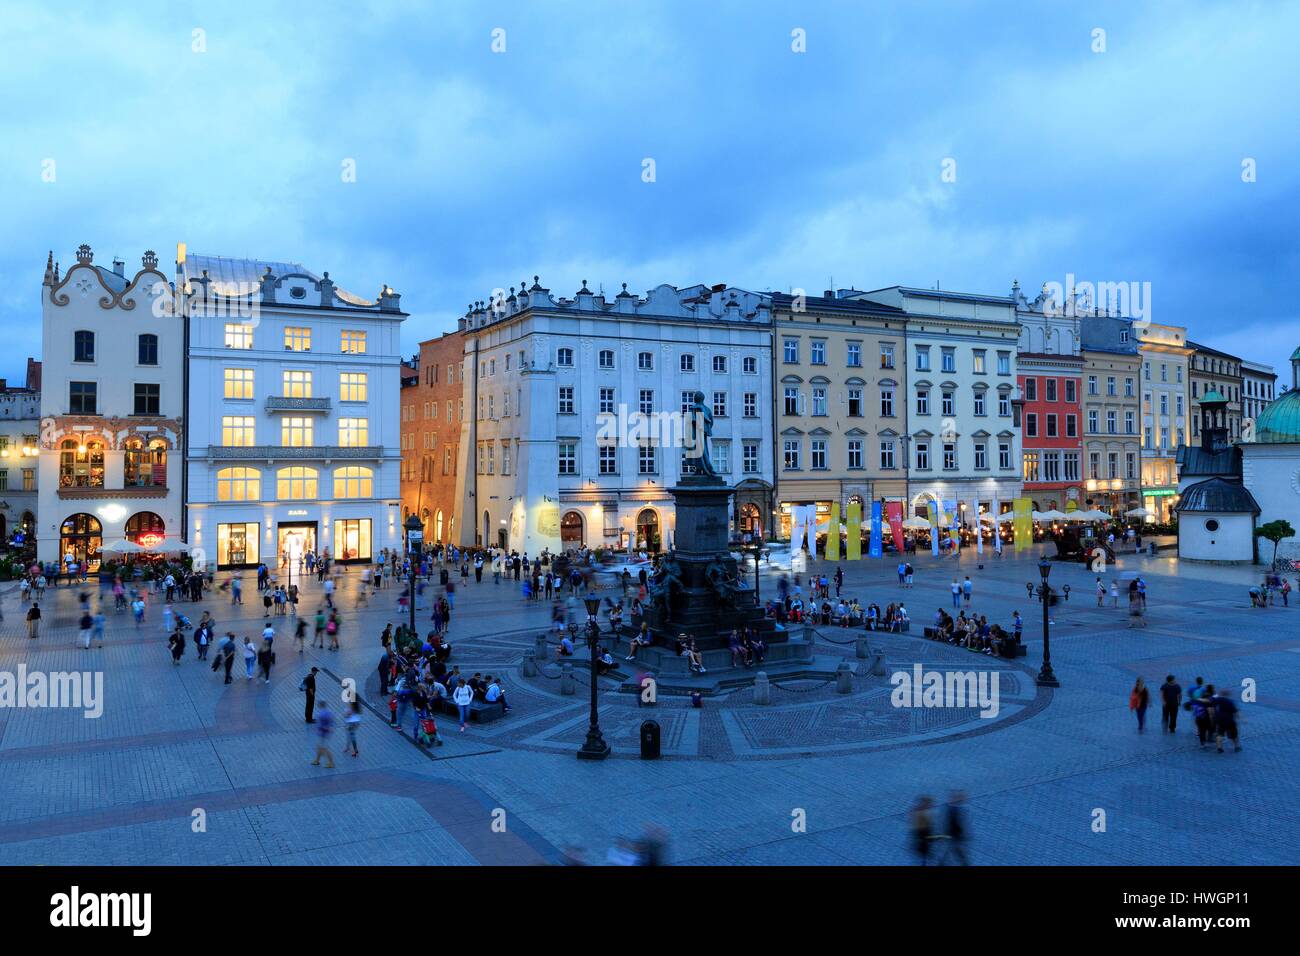 Polen, Kleinpolen, Krakow, Stare Miasto Bezirk, Weltkulturerbe von UNESCO, Altstadt, Marktplatz Stockfoto